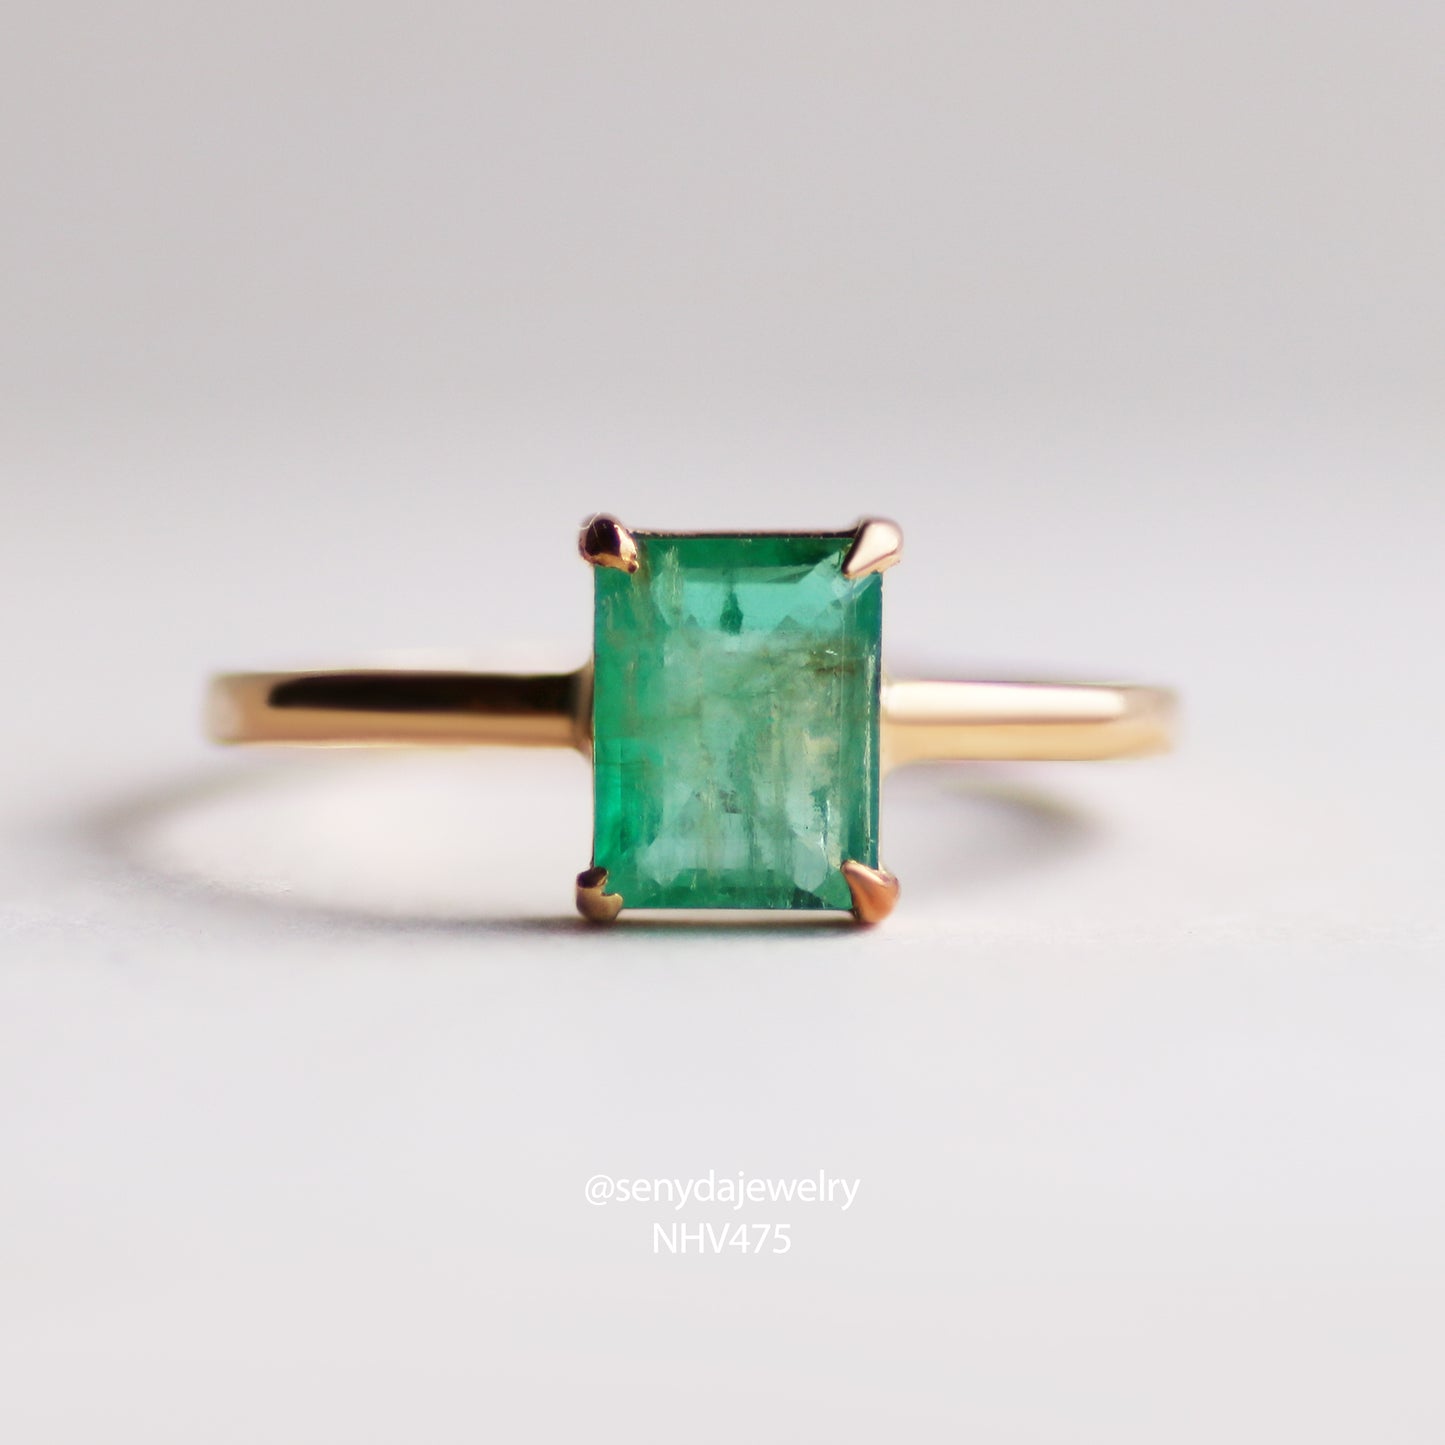 Senyda 16K Solid Gold Princess - Shaped Brilliant Cut Natural Emerald Ring